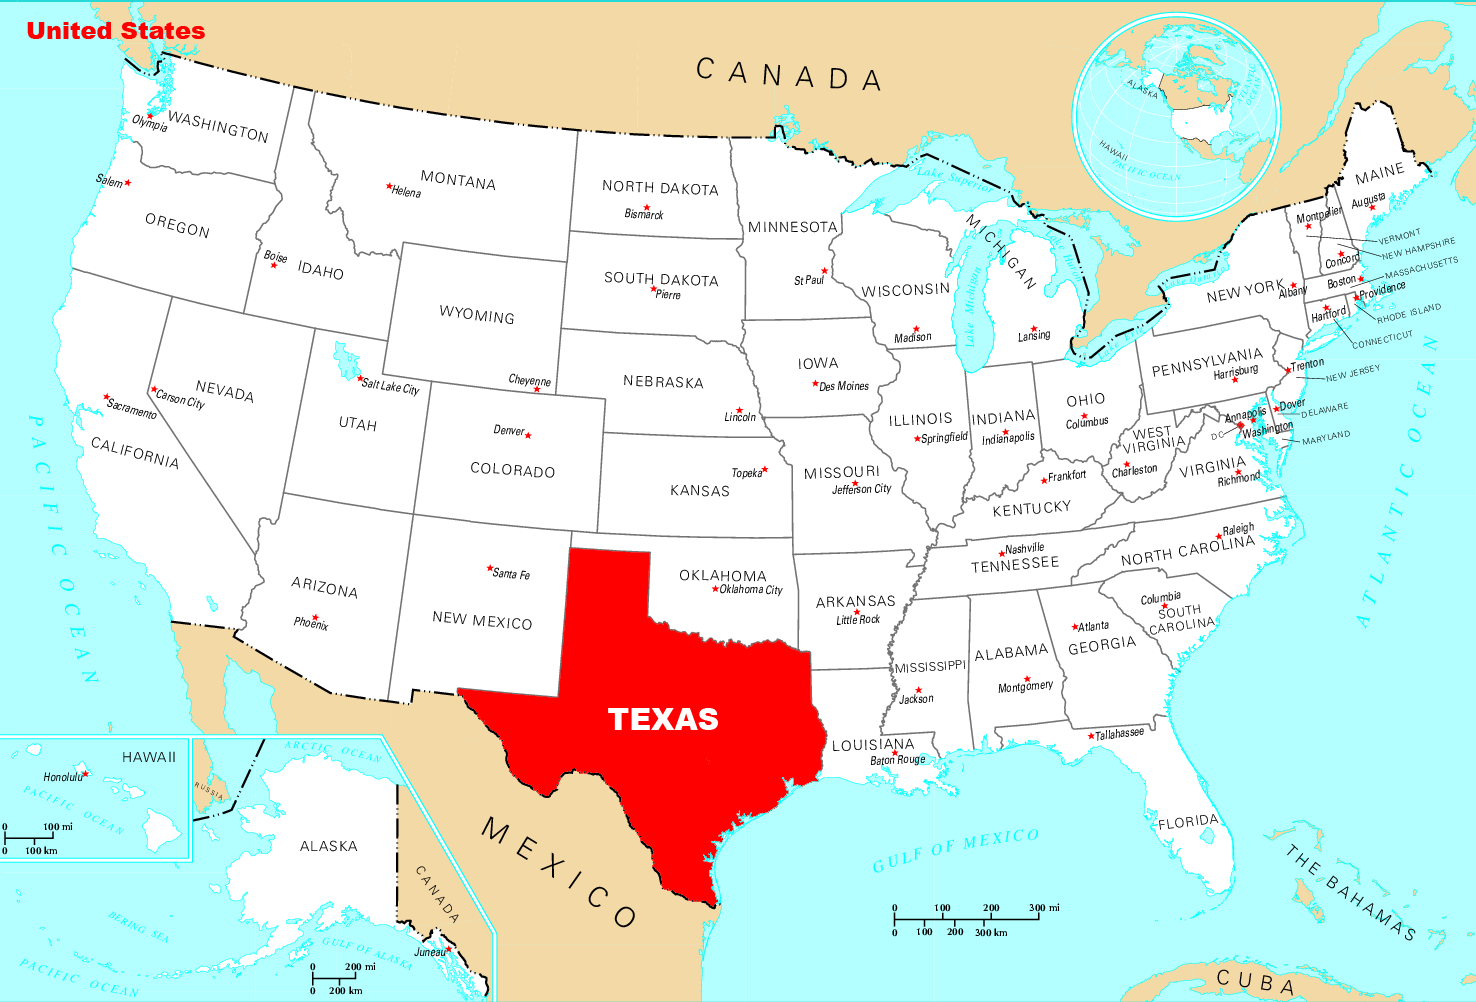 Техас сколько штатов